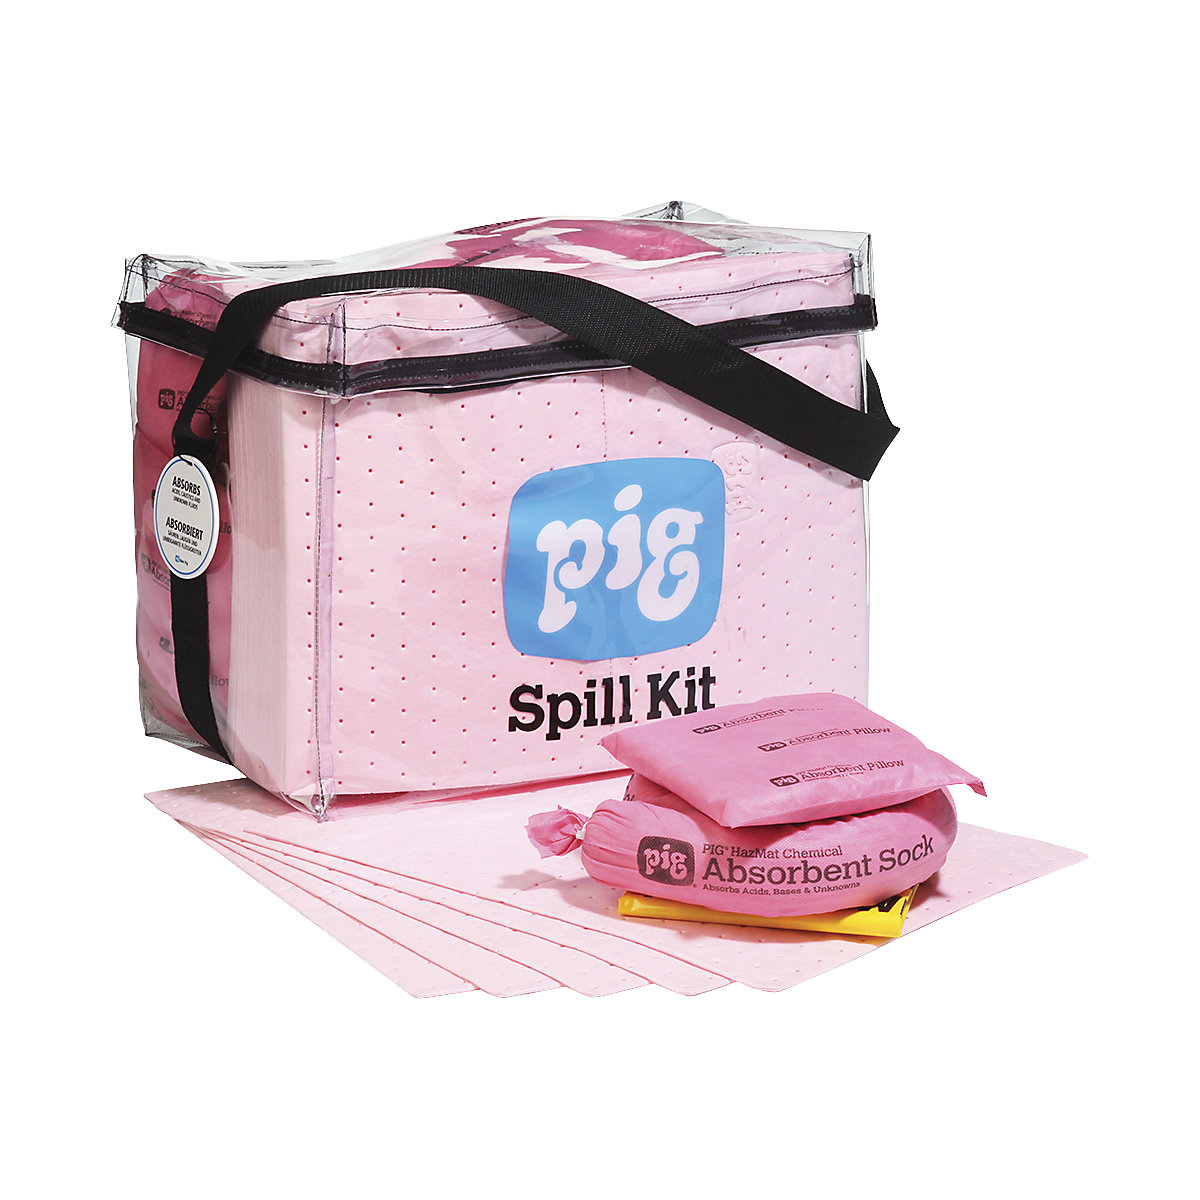 Emergency kit in a transparent bag - PIG